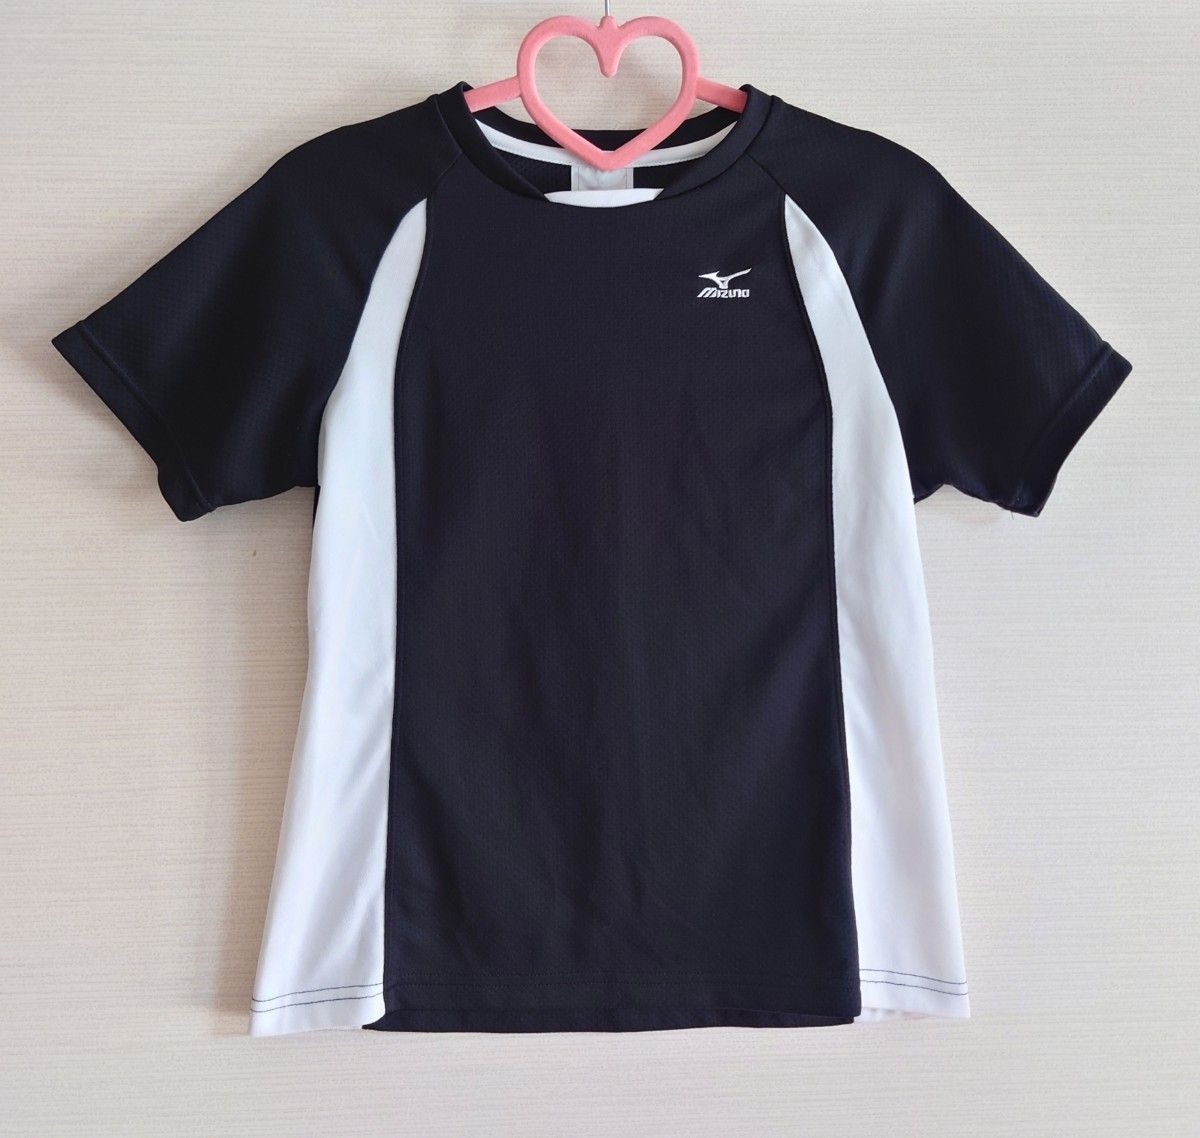 MIZUNO ミズノ レディース トップス スポーツウェア シャツ 半袖 ブラック 黒 ホワイト 白 Sサイズ